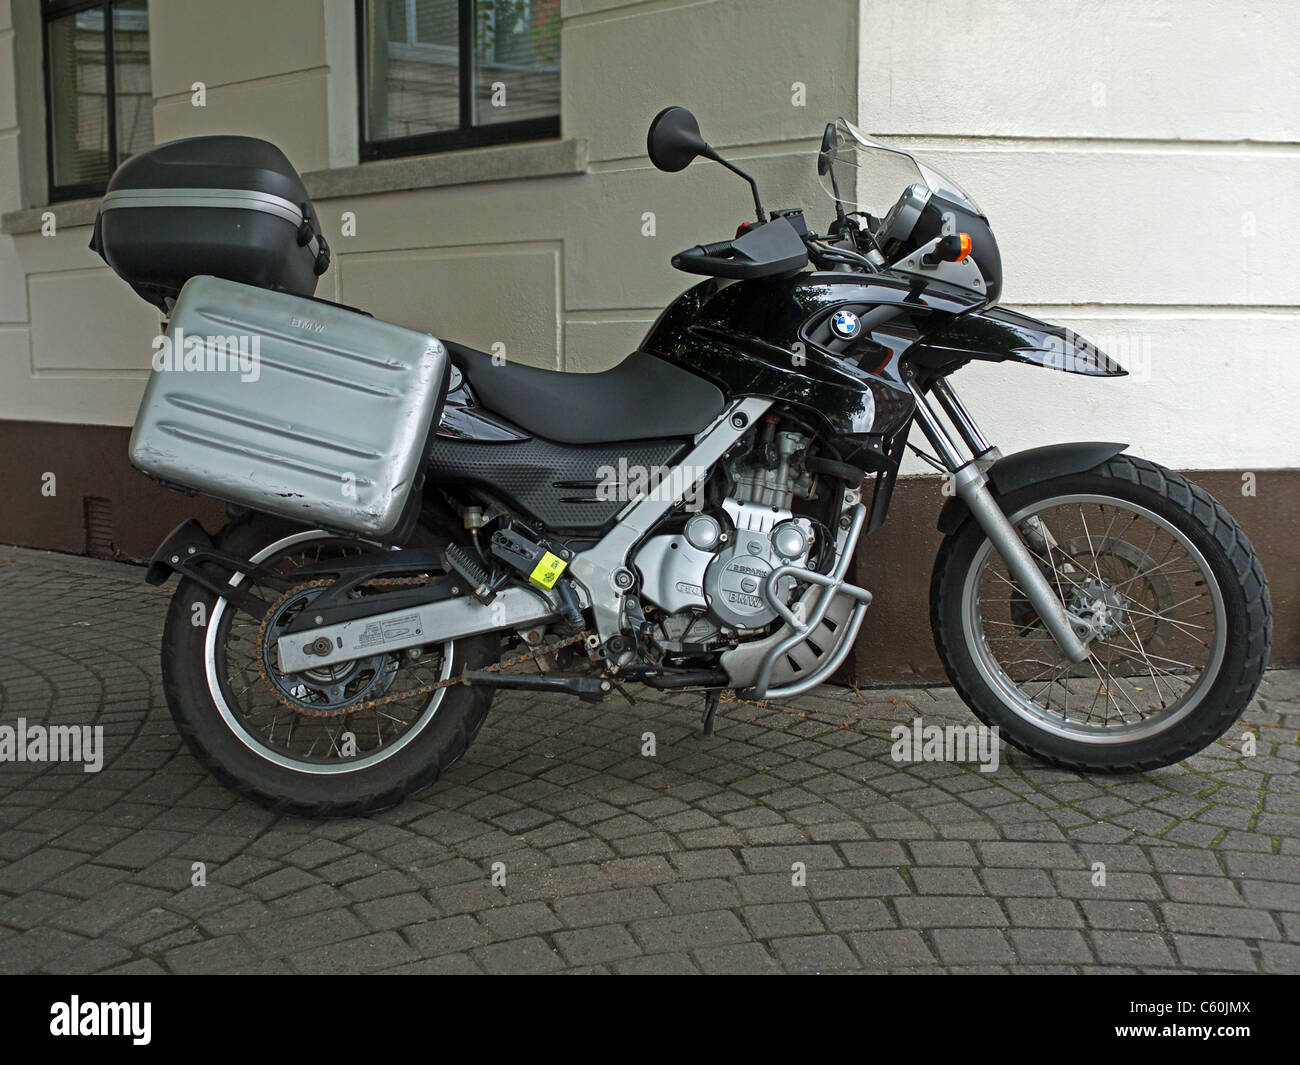 BMW 650 Motorrad Motorrad-all-Terrain mit Aluminiumkoffer Dublin Irland  Stockfotografie - Alamy